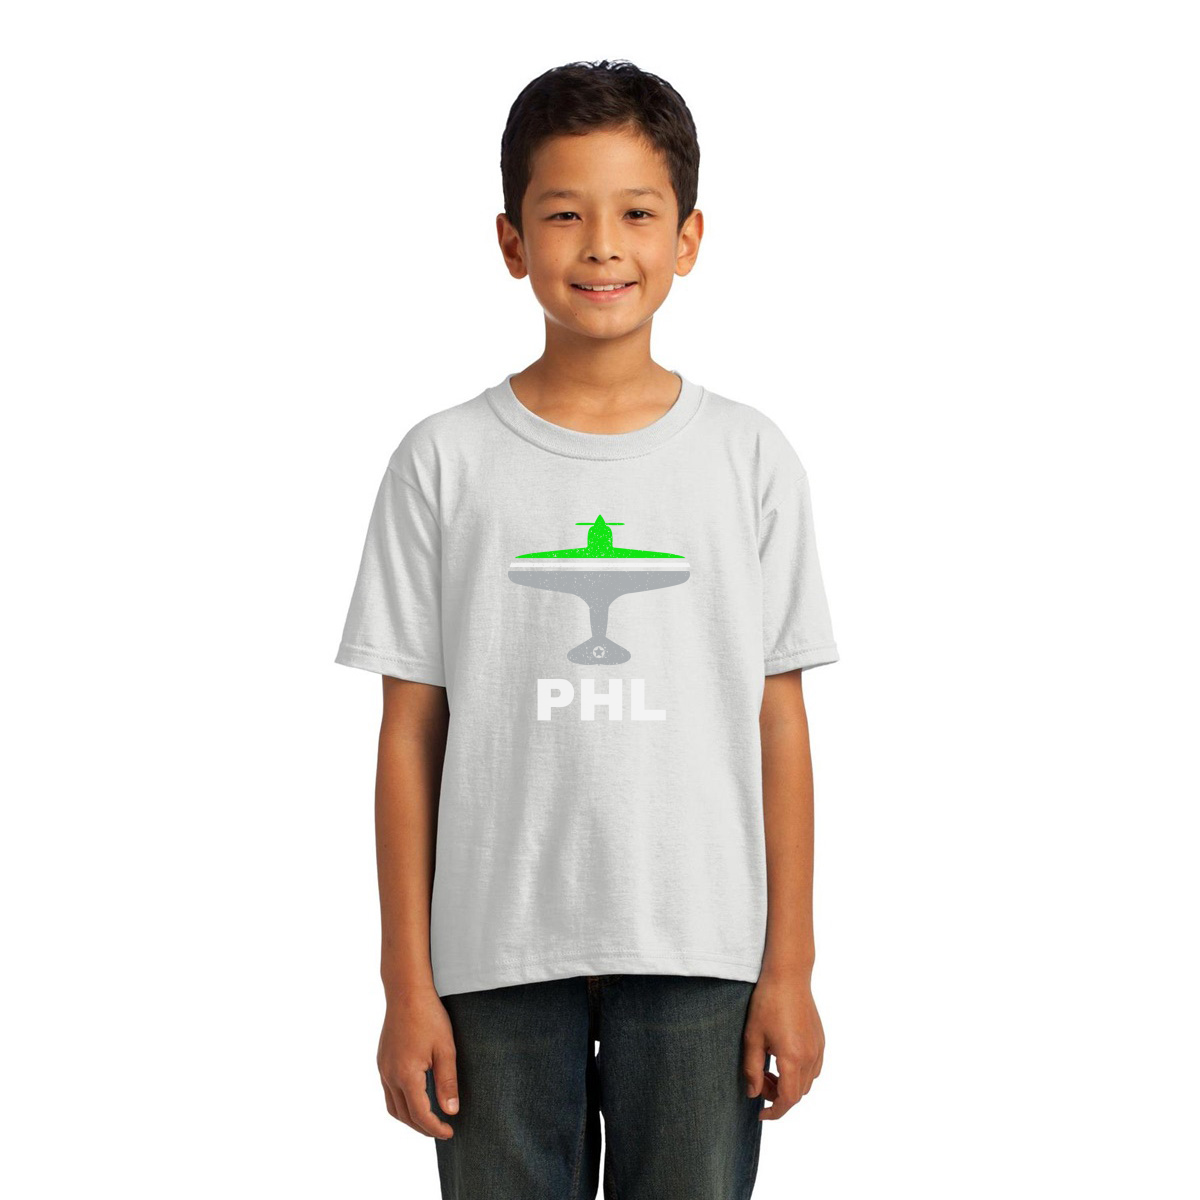 Fly Philadelphia PHL Airport Kids T-shirt | White